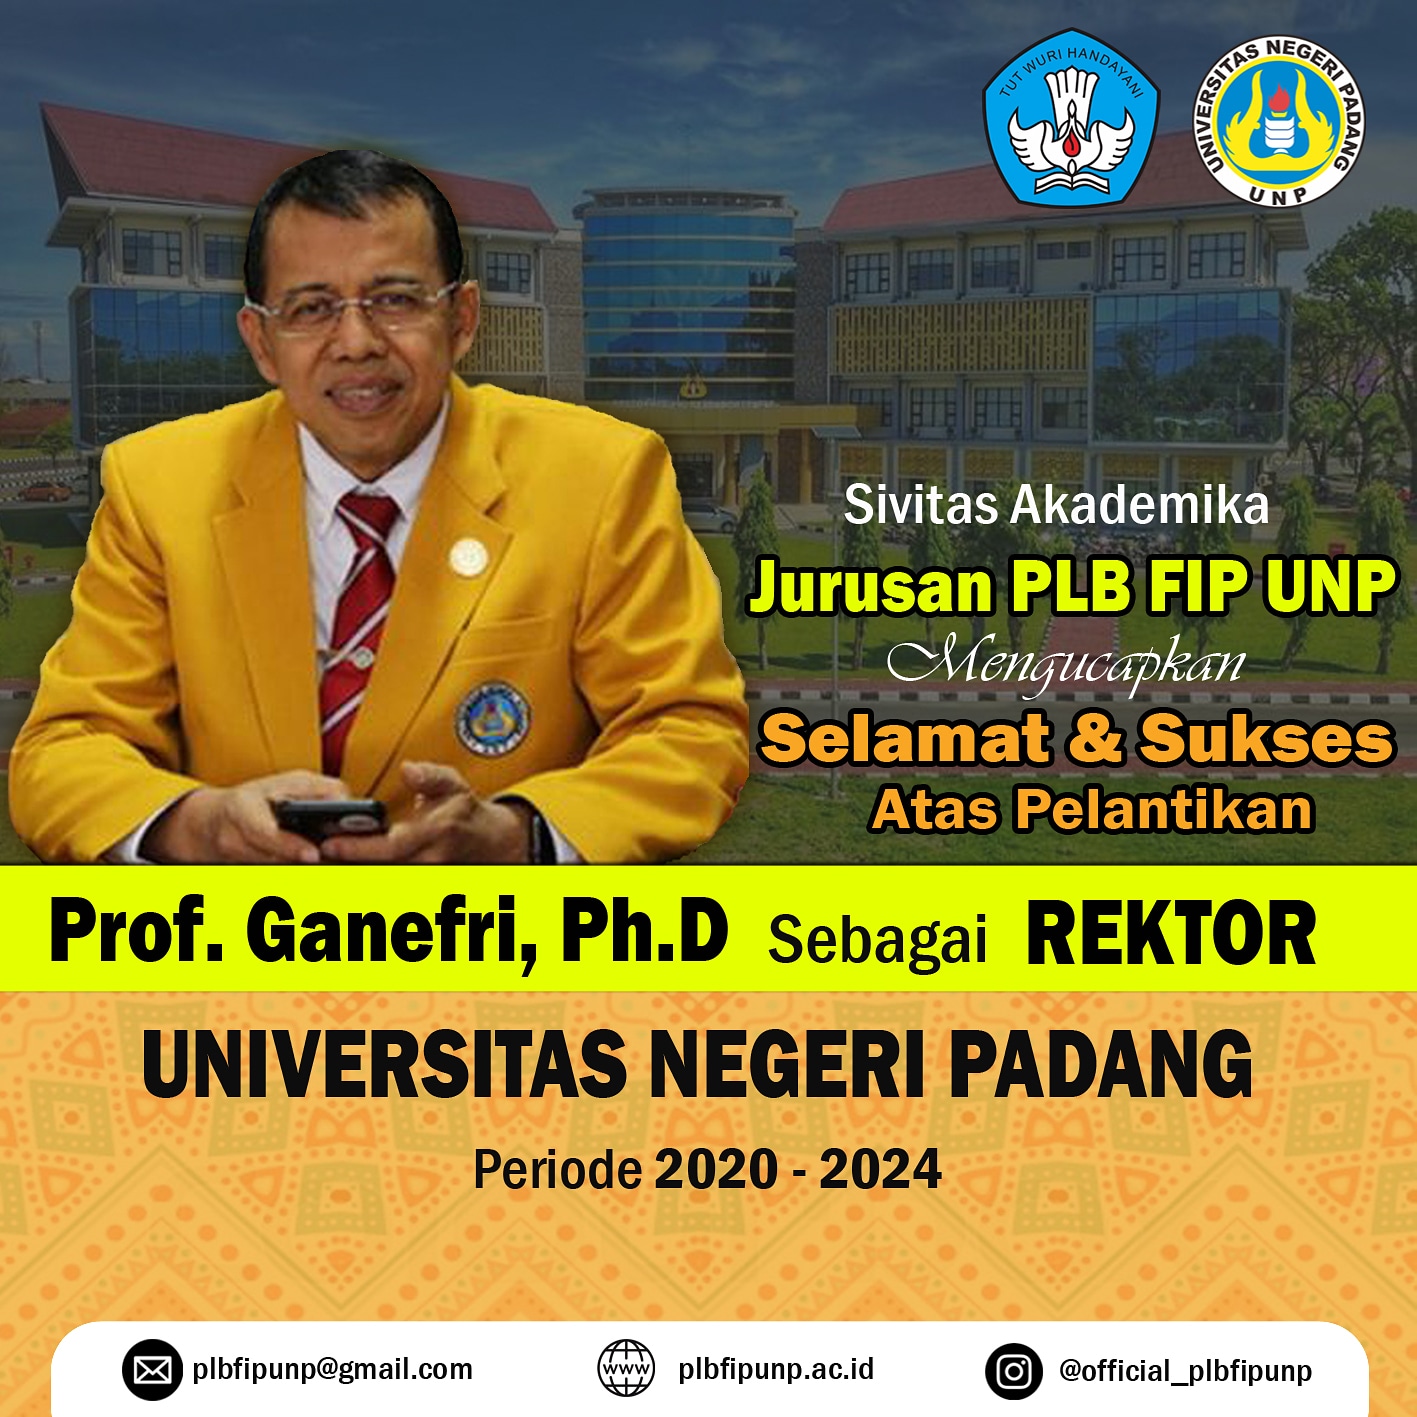 Pelantikan Rektor Universitas Negeri Padang Periode 2020-2024